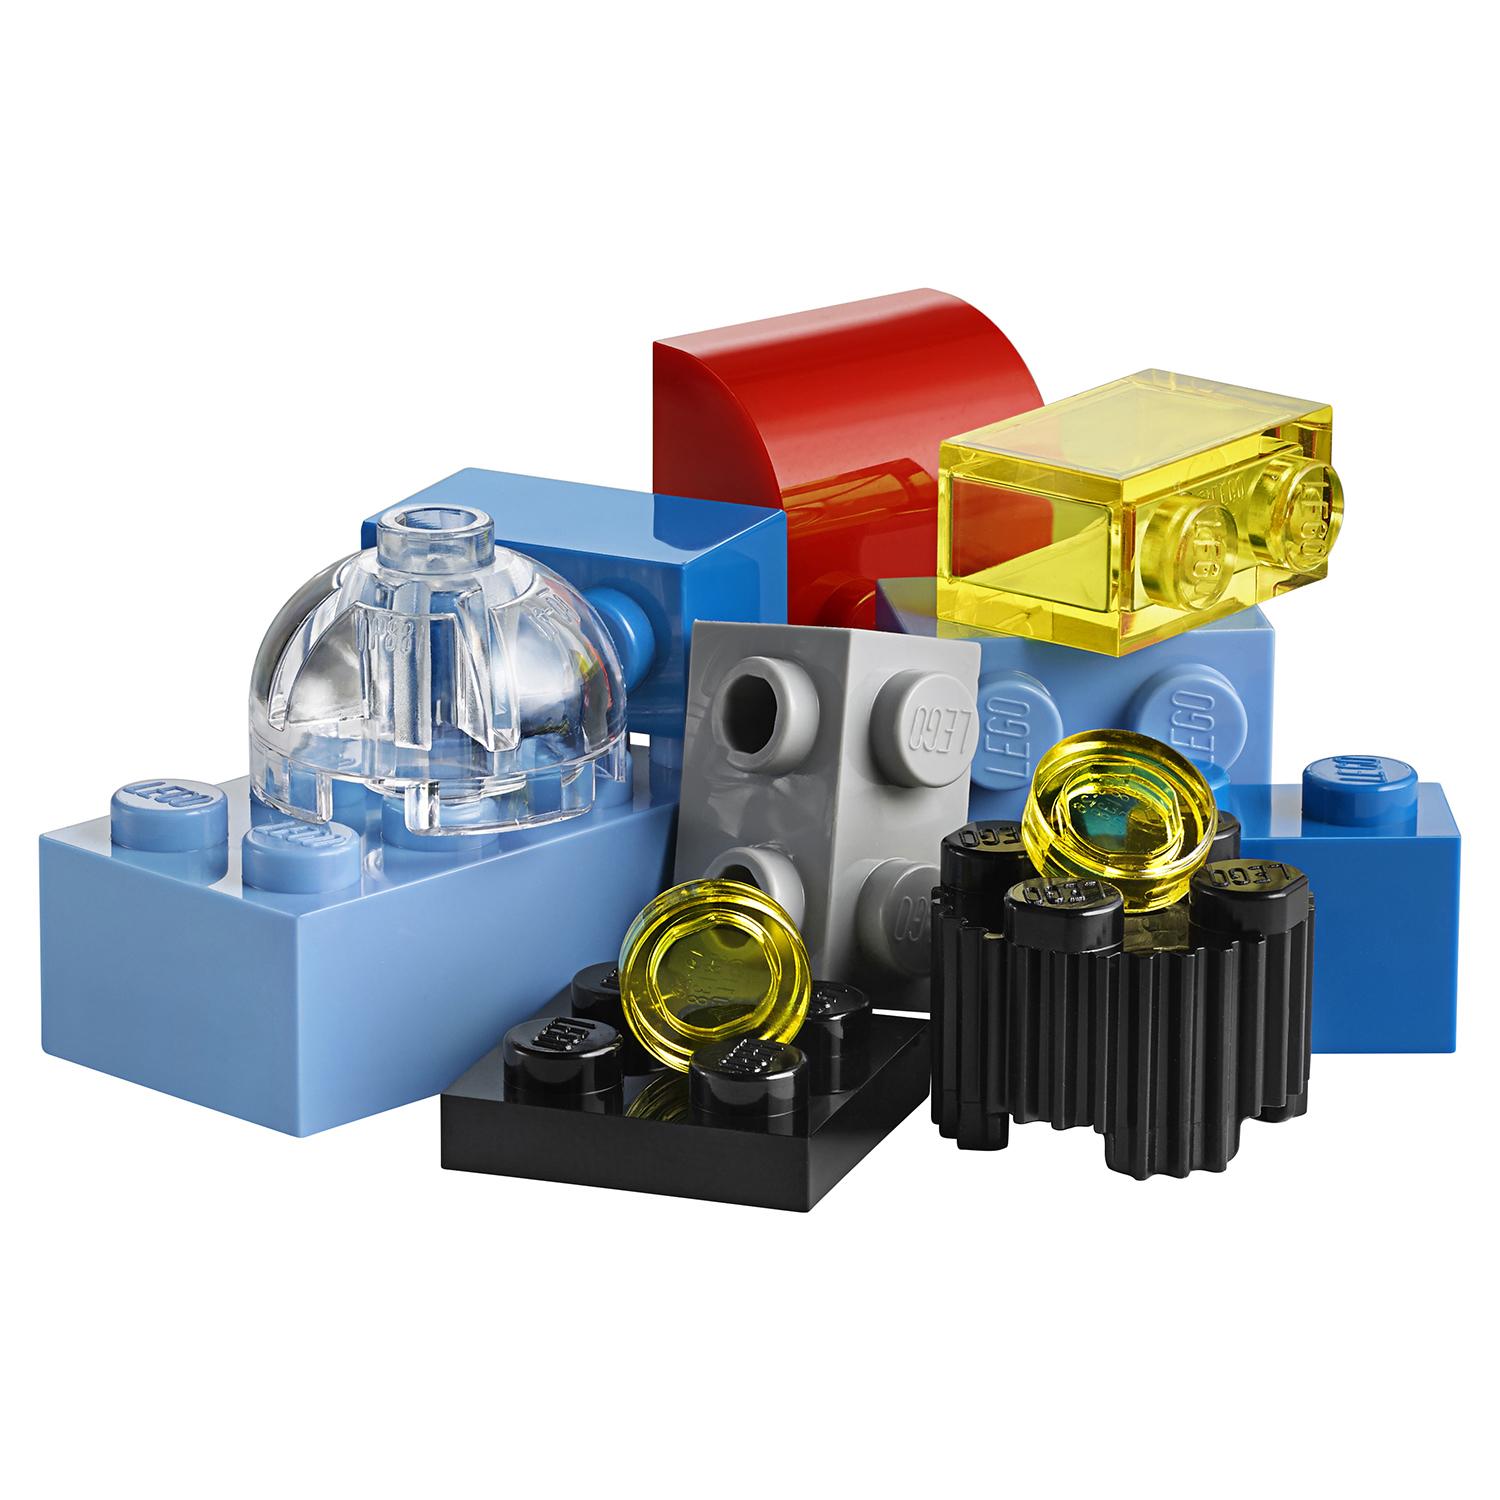 Конструктор Lego Classic - Чемоданчик для творчества и конструирования  